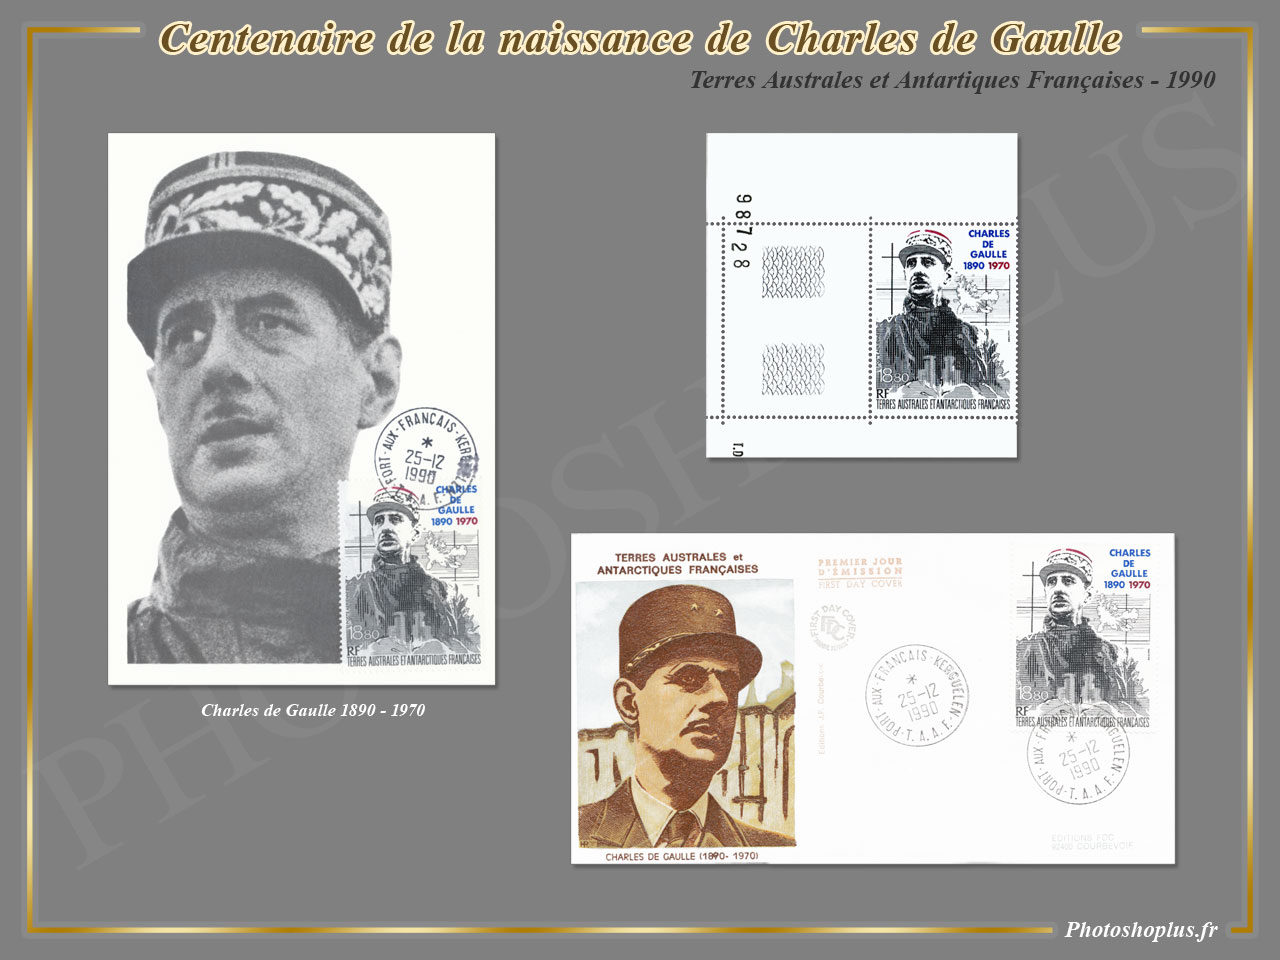 Centenaire de la naissance de Charles de Gaulle